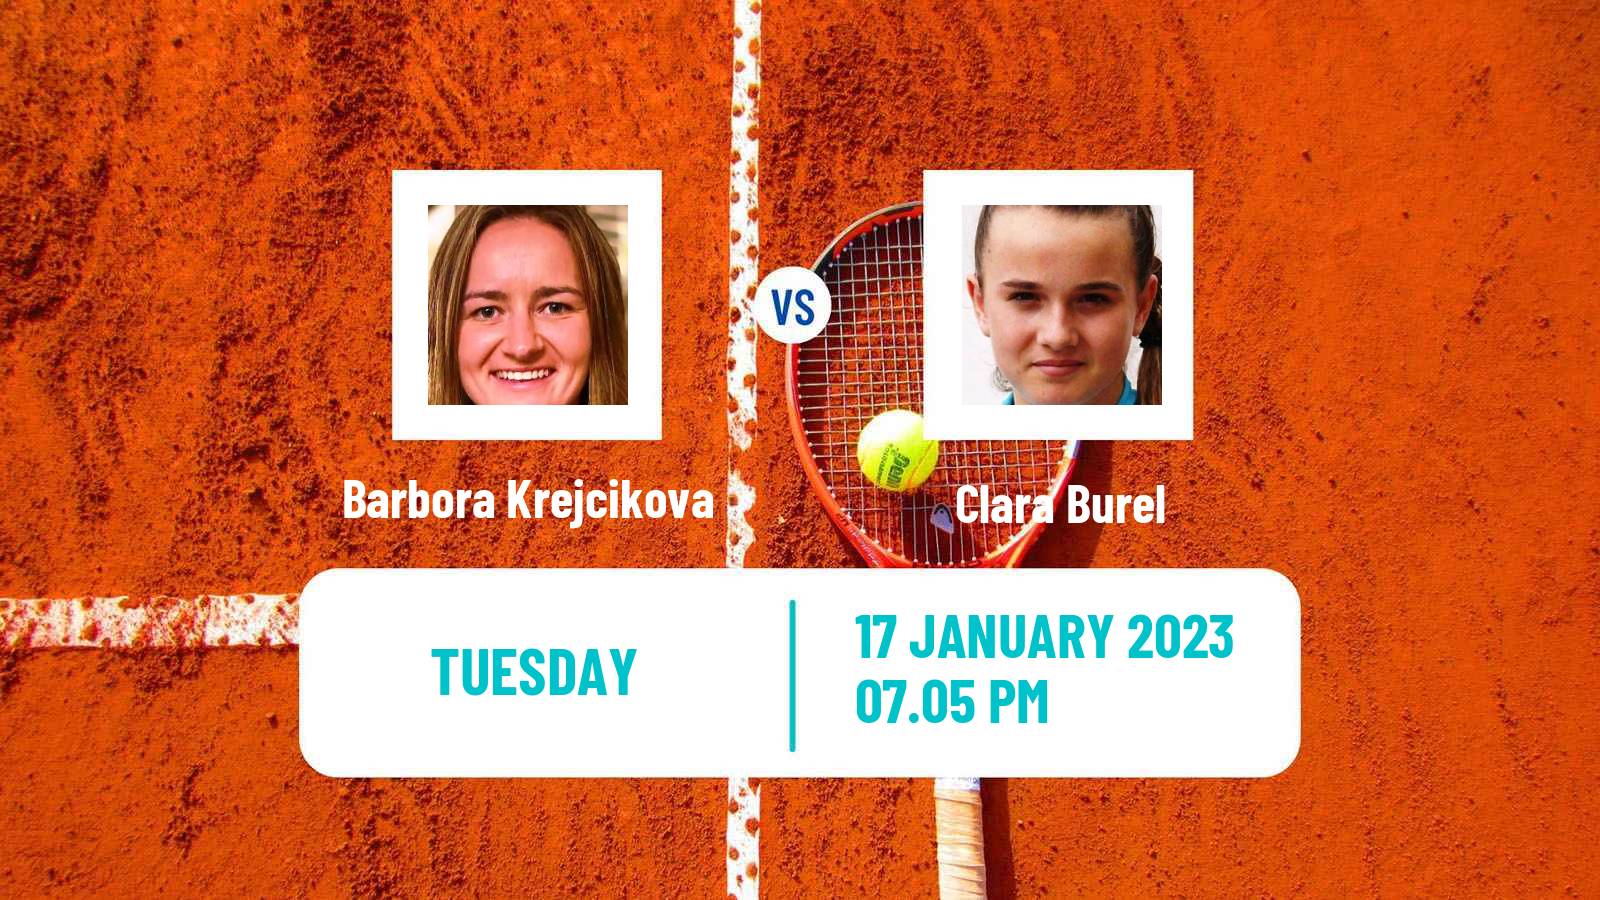 Tennis WTA Australian Open Barbora Krejcikova - Clara Burel